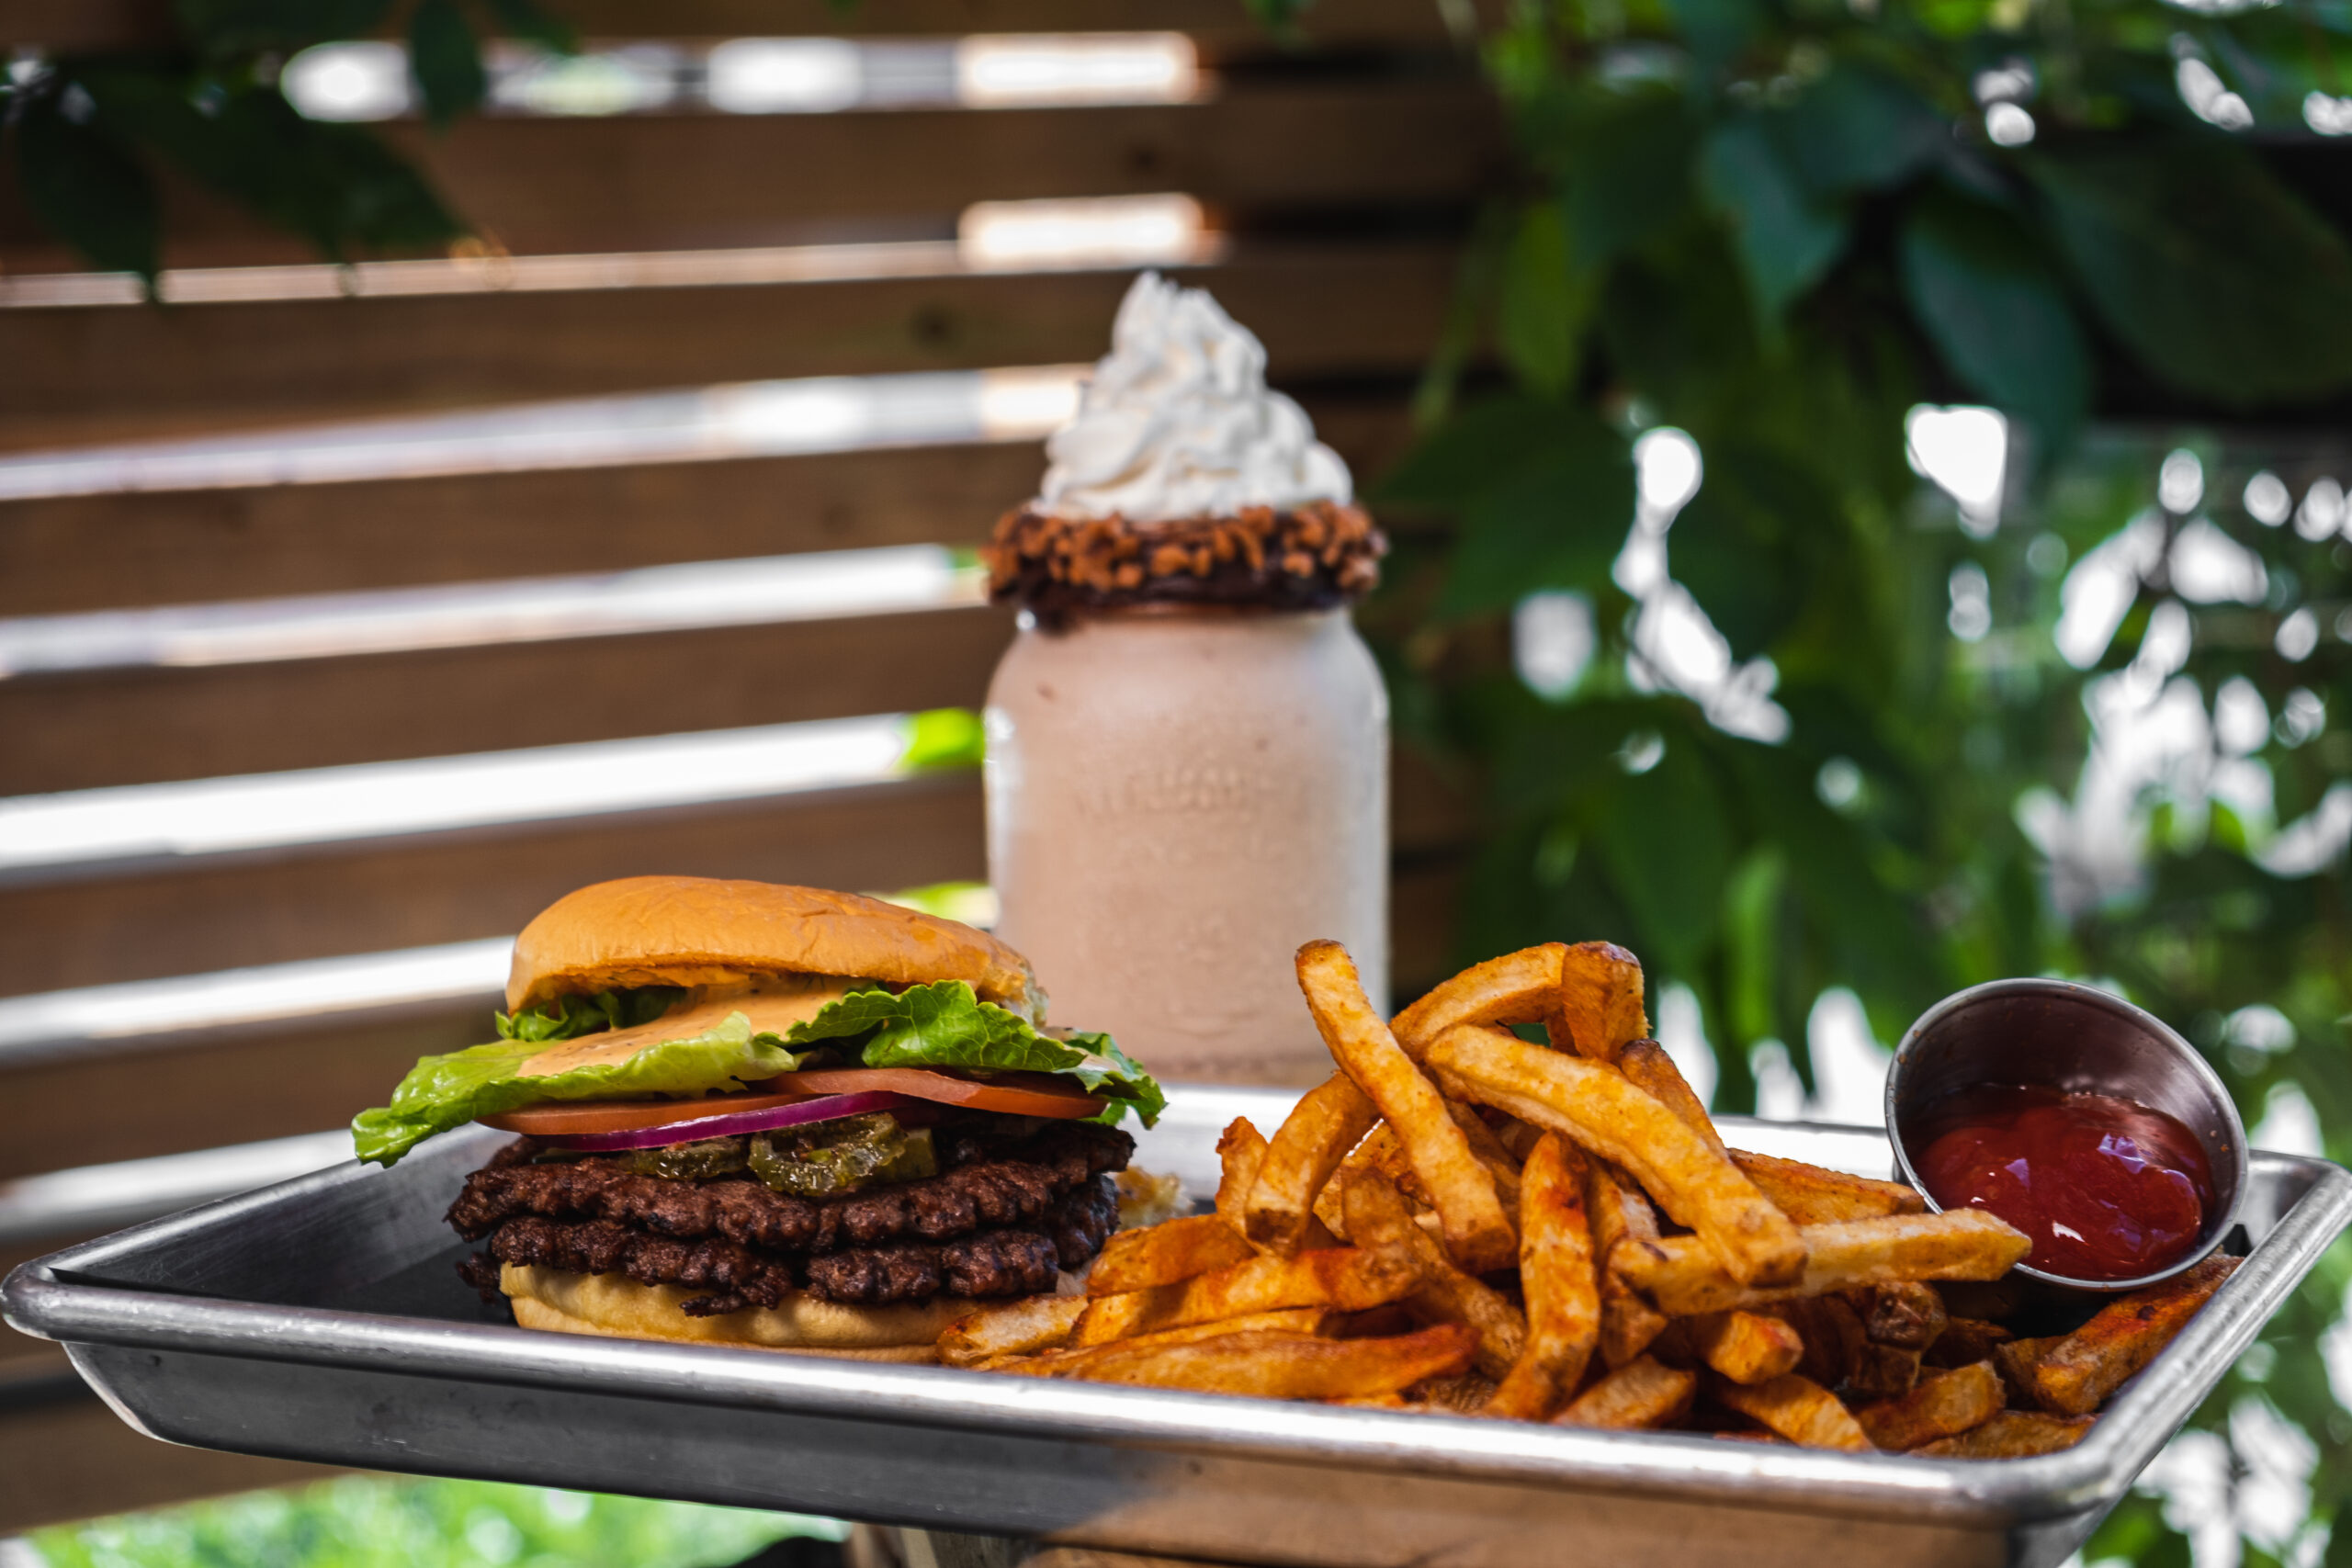 milkshake, burger, and fries